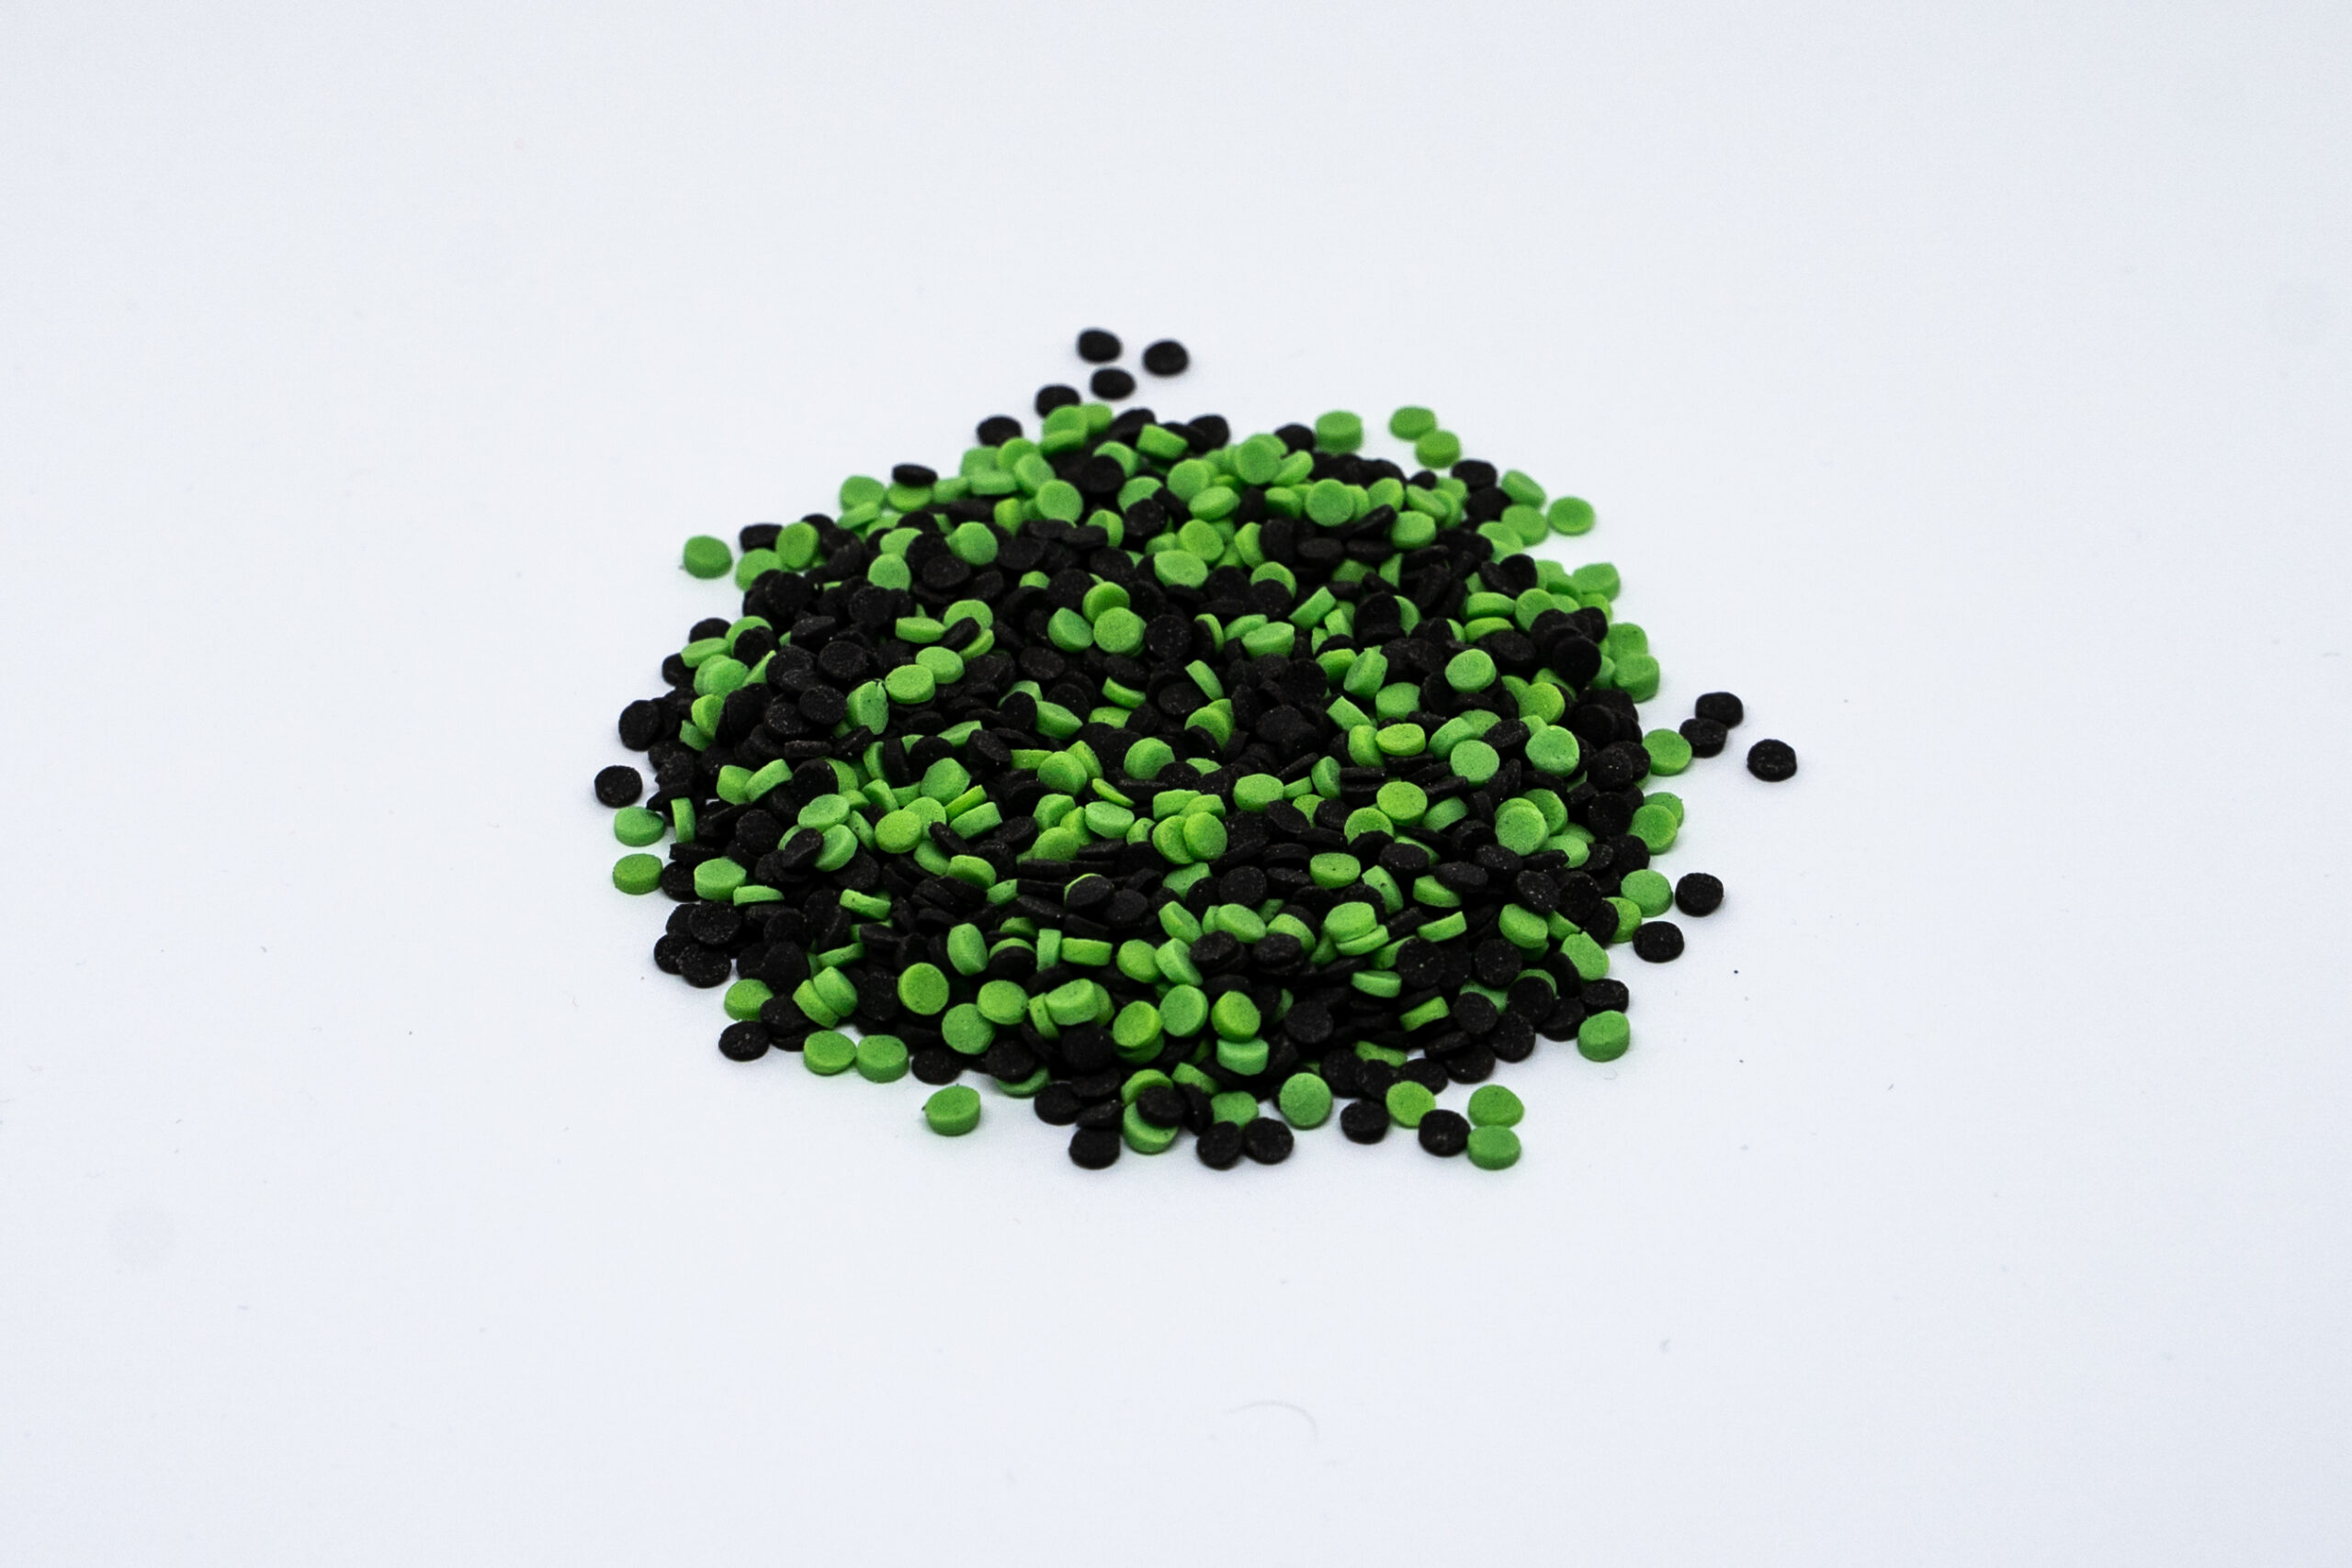 Green and Black mini confeti